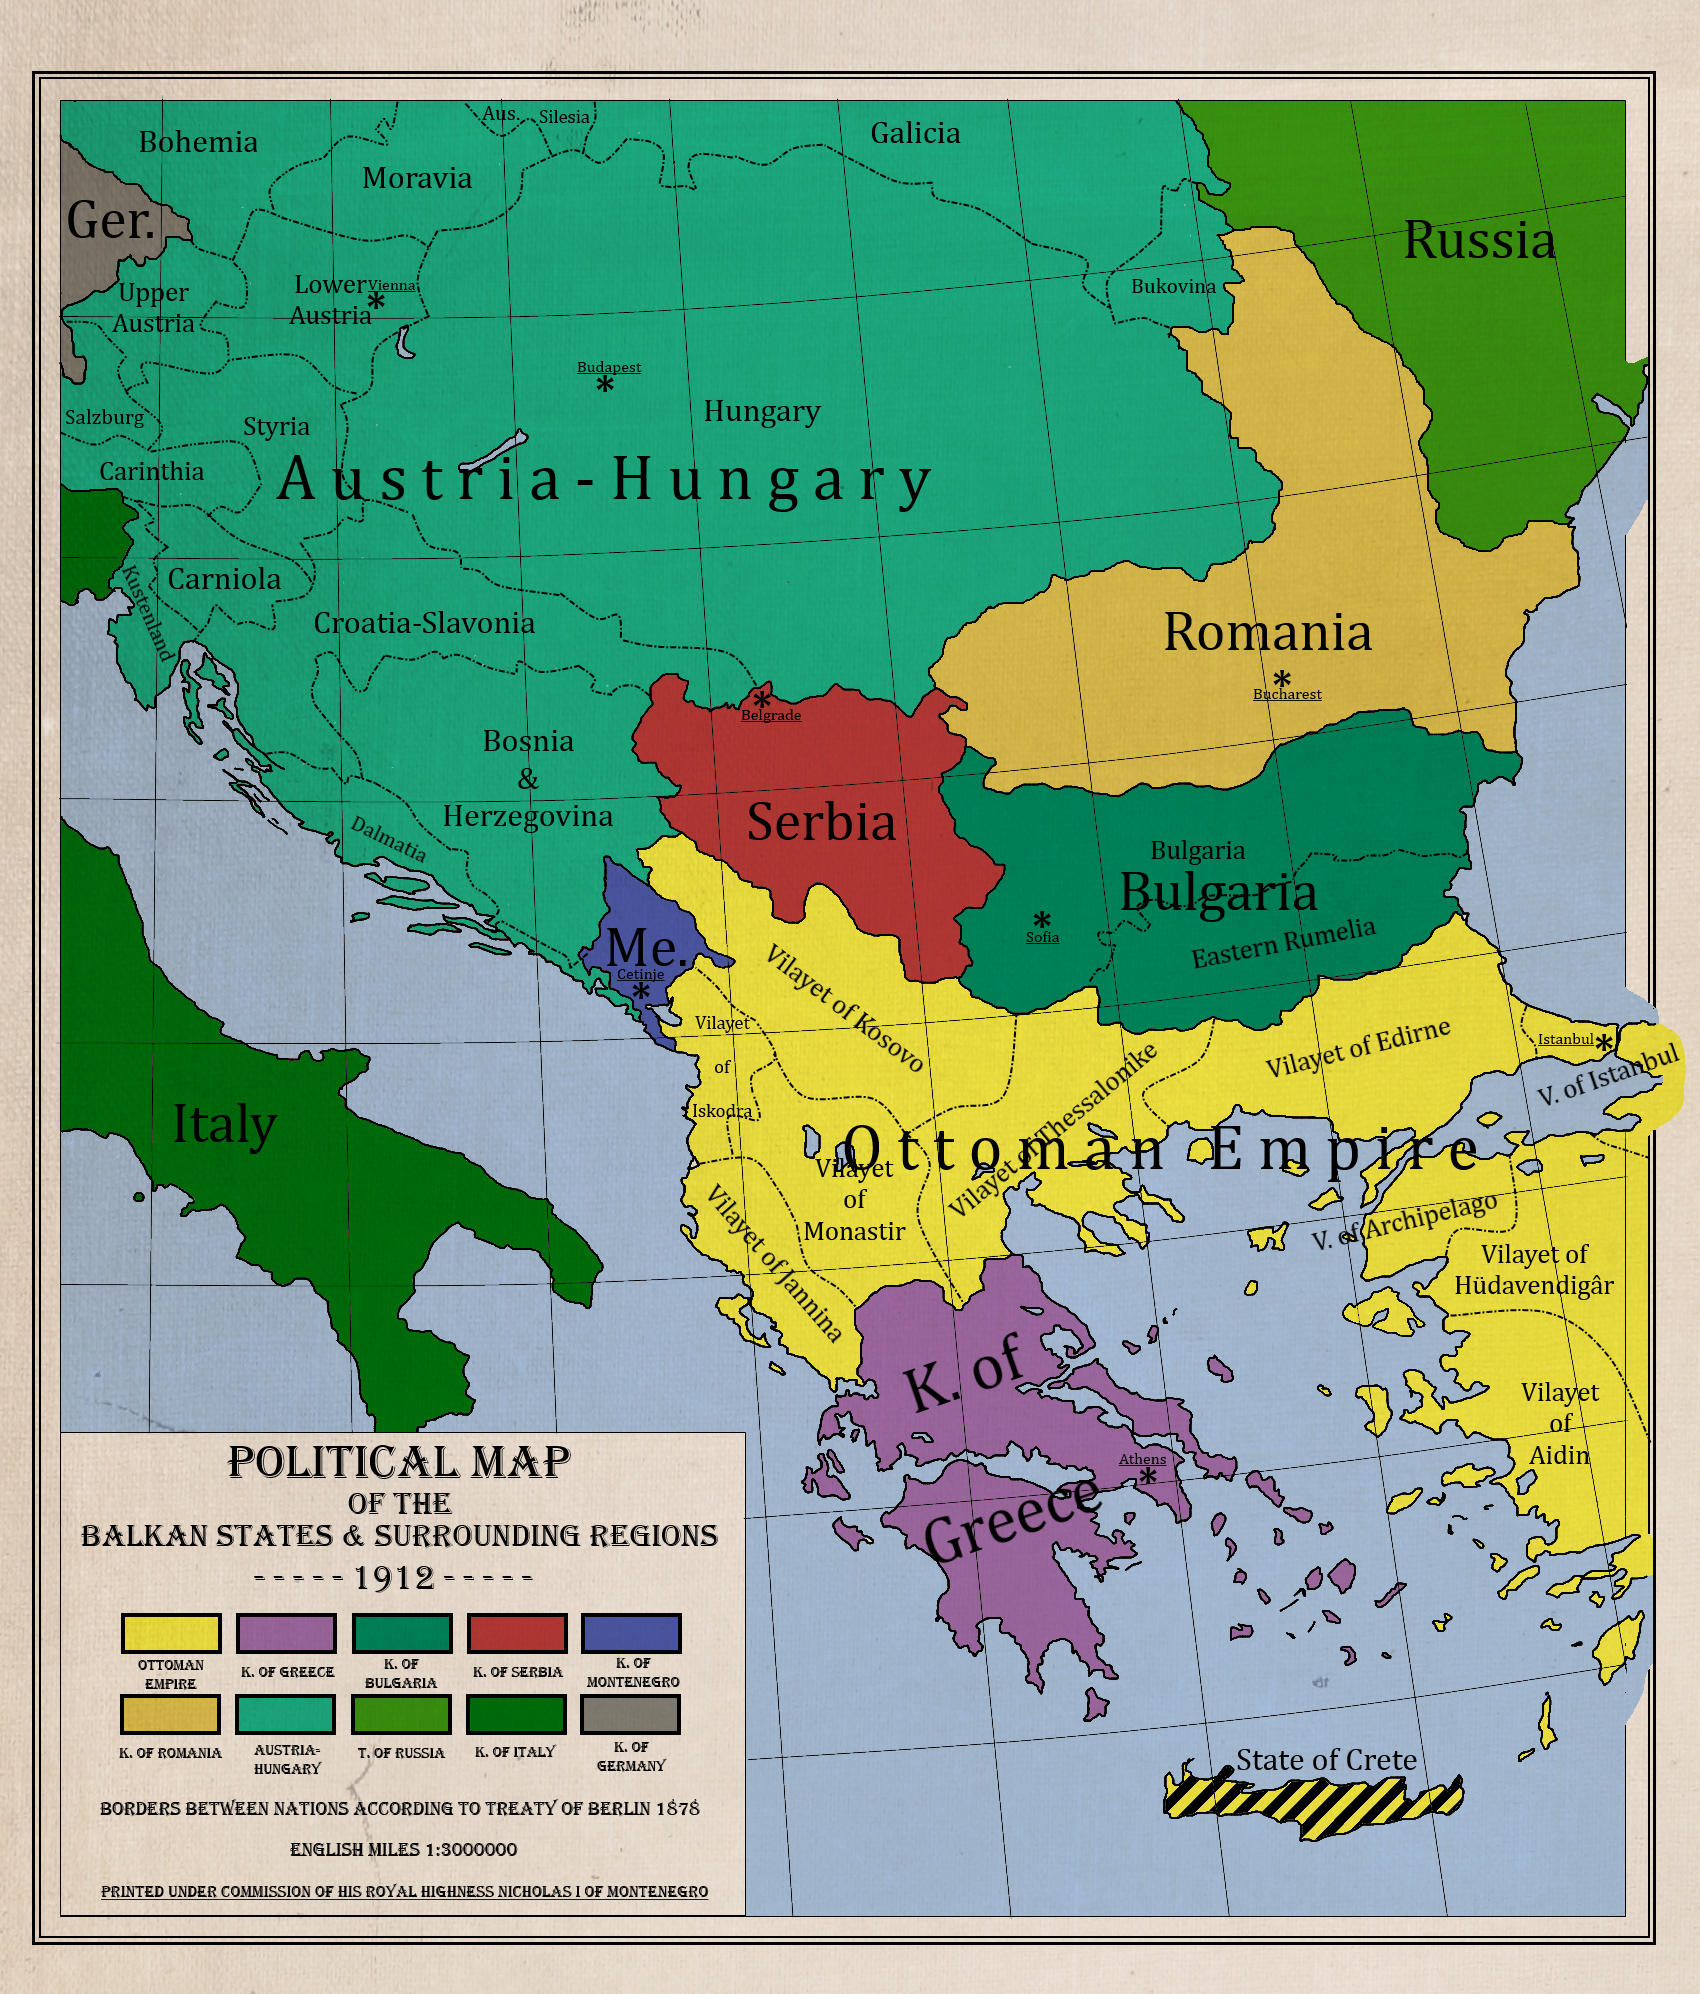 Balkans 1912: Dawn of the First Balkan War by zalezsky on DeviantArt